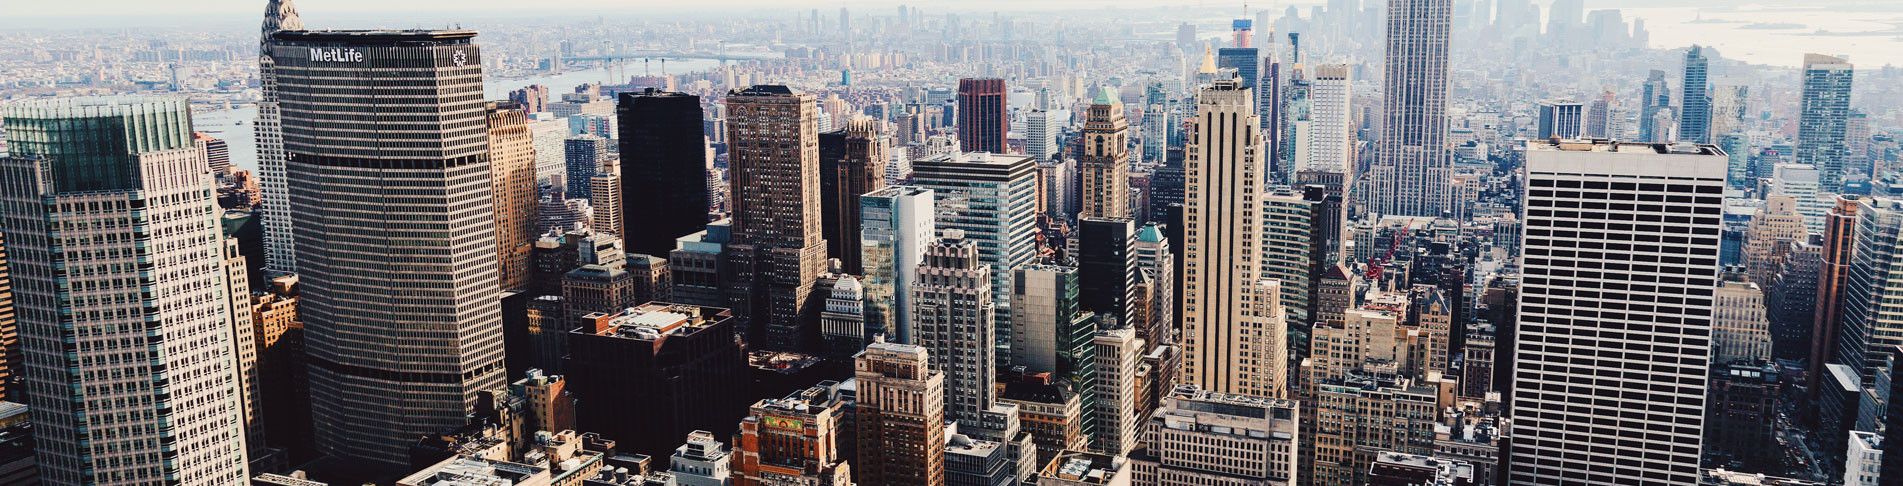 Die Skyline von New York bei einer Städtereise bestaunen